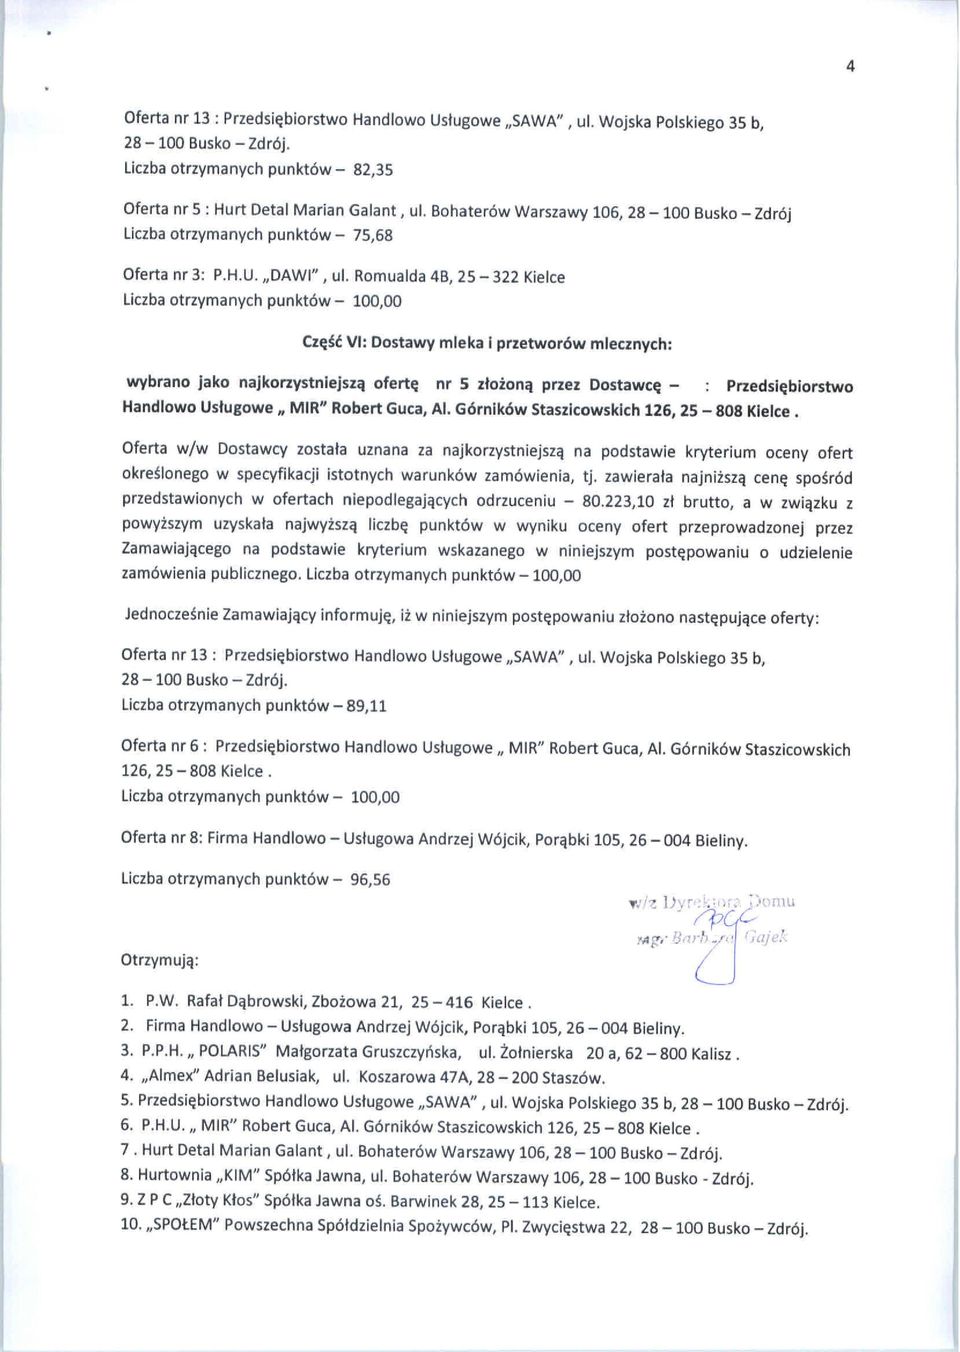 Al. Górników Staszicowskich 126, 25-808 Kielce. przedstawionych w ofertach niepodlegających odrzuceniu - 80.